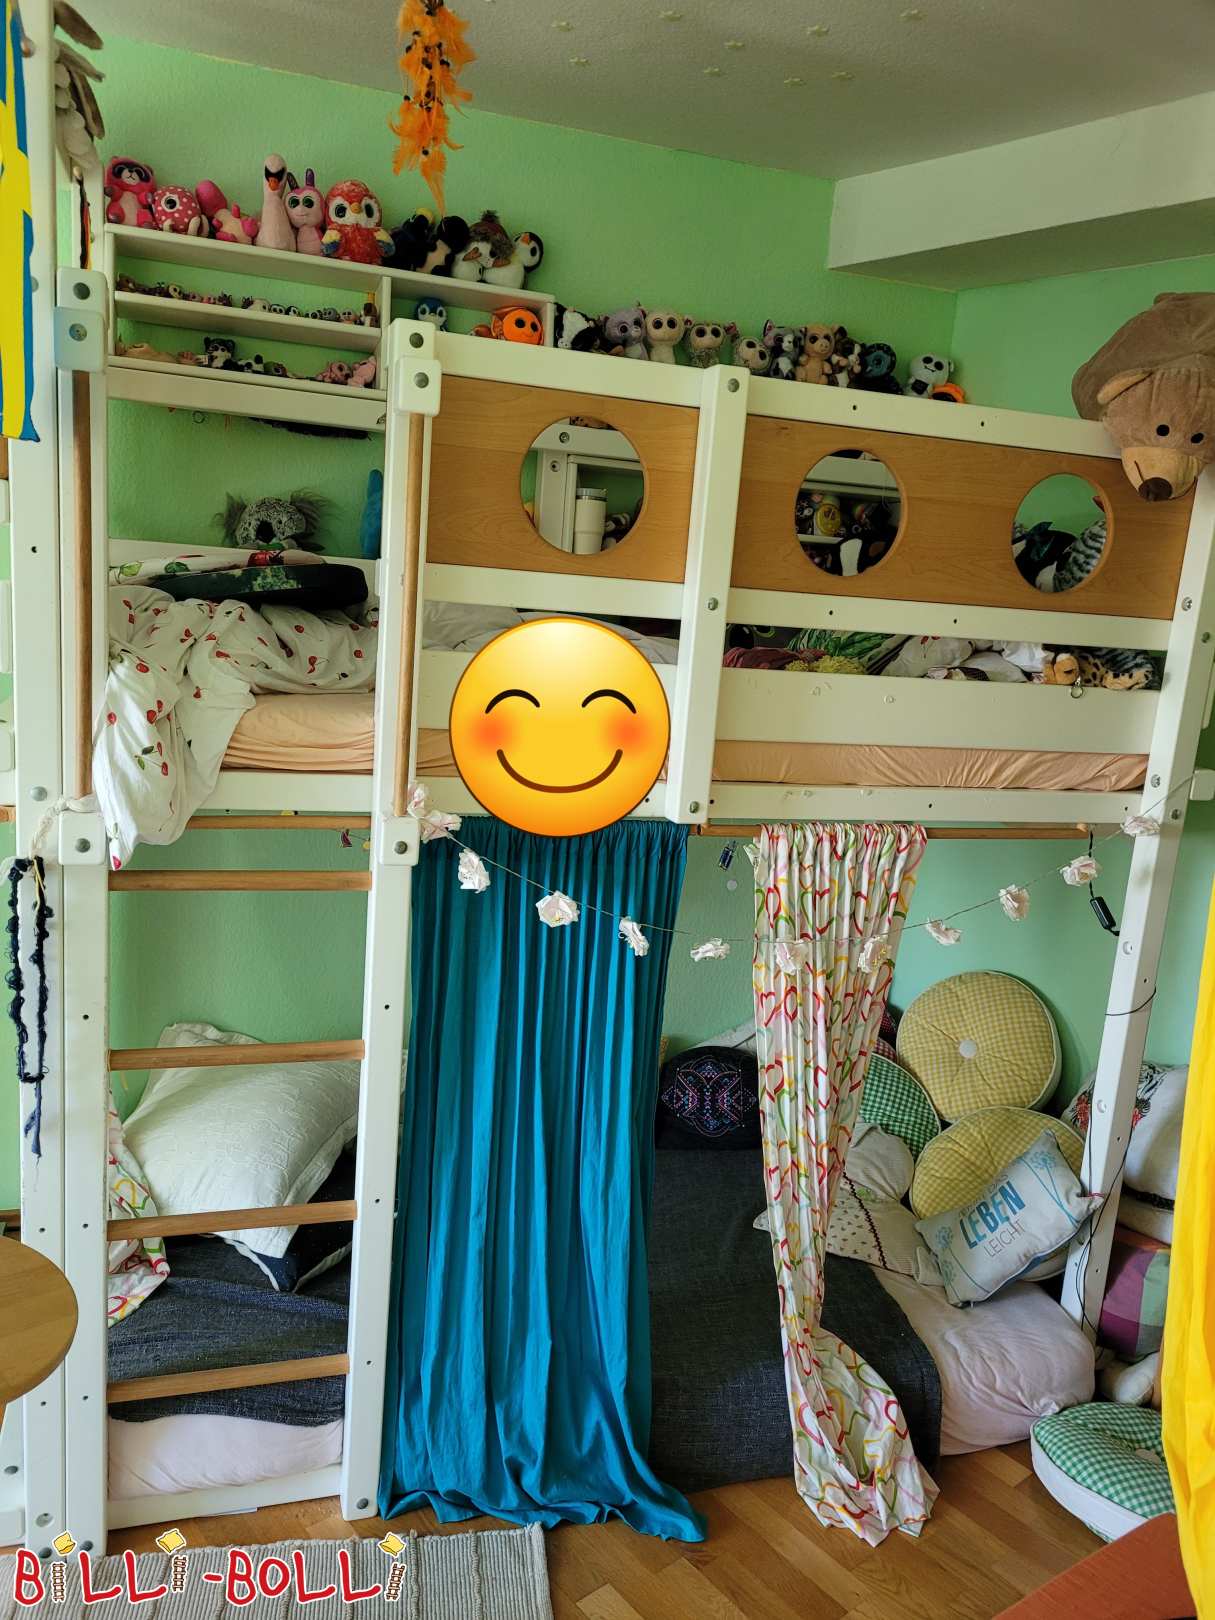 Pustolovska postelja Billi Bolli s plezalno vrvjo in gugalnico (Category: Podstrešna postelja, ki raste z otrokom used)